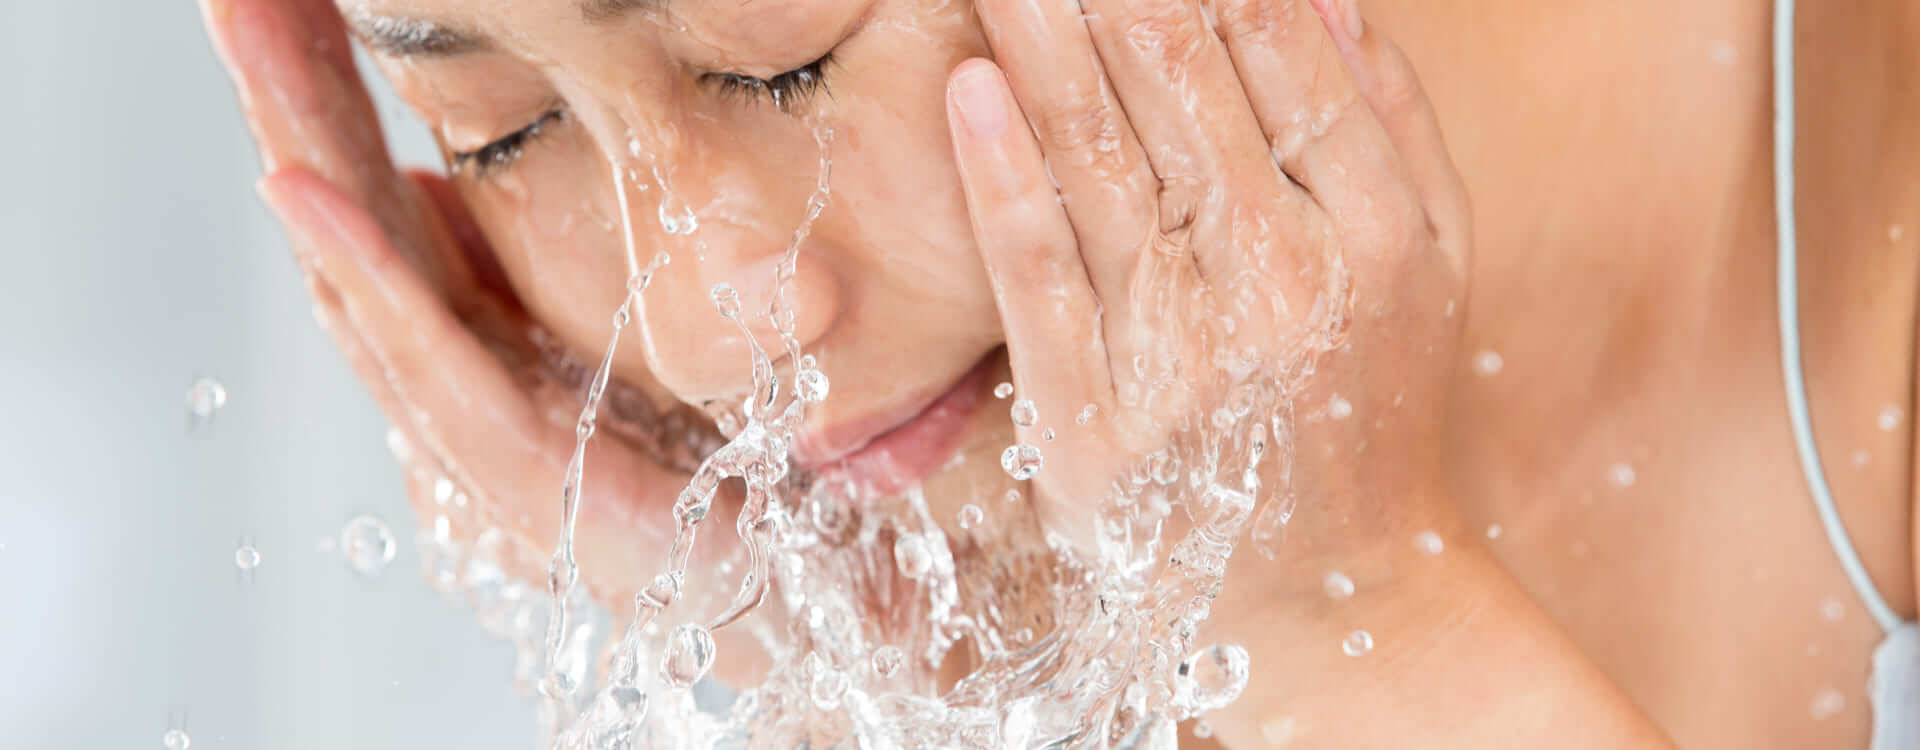 Lavarsi il viso con acqua fredda: i benefici acqua fredda sul viso